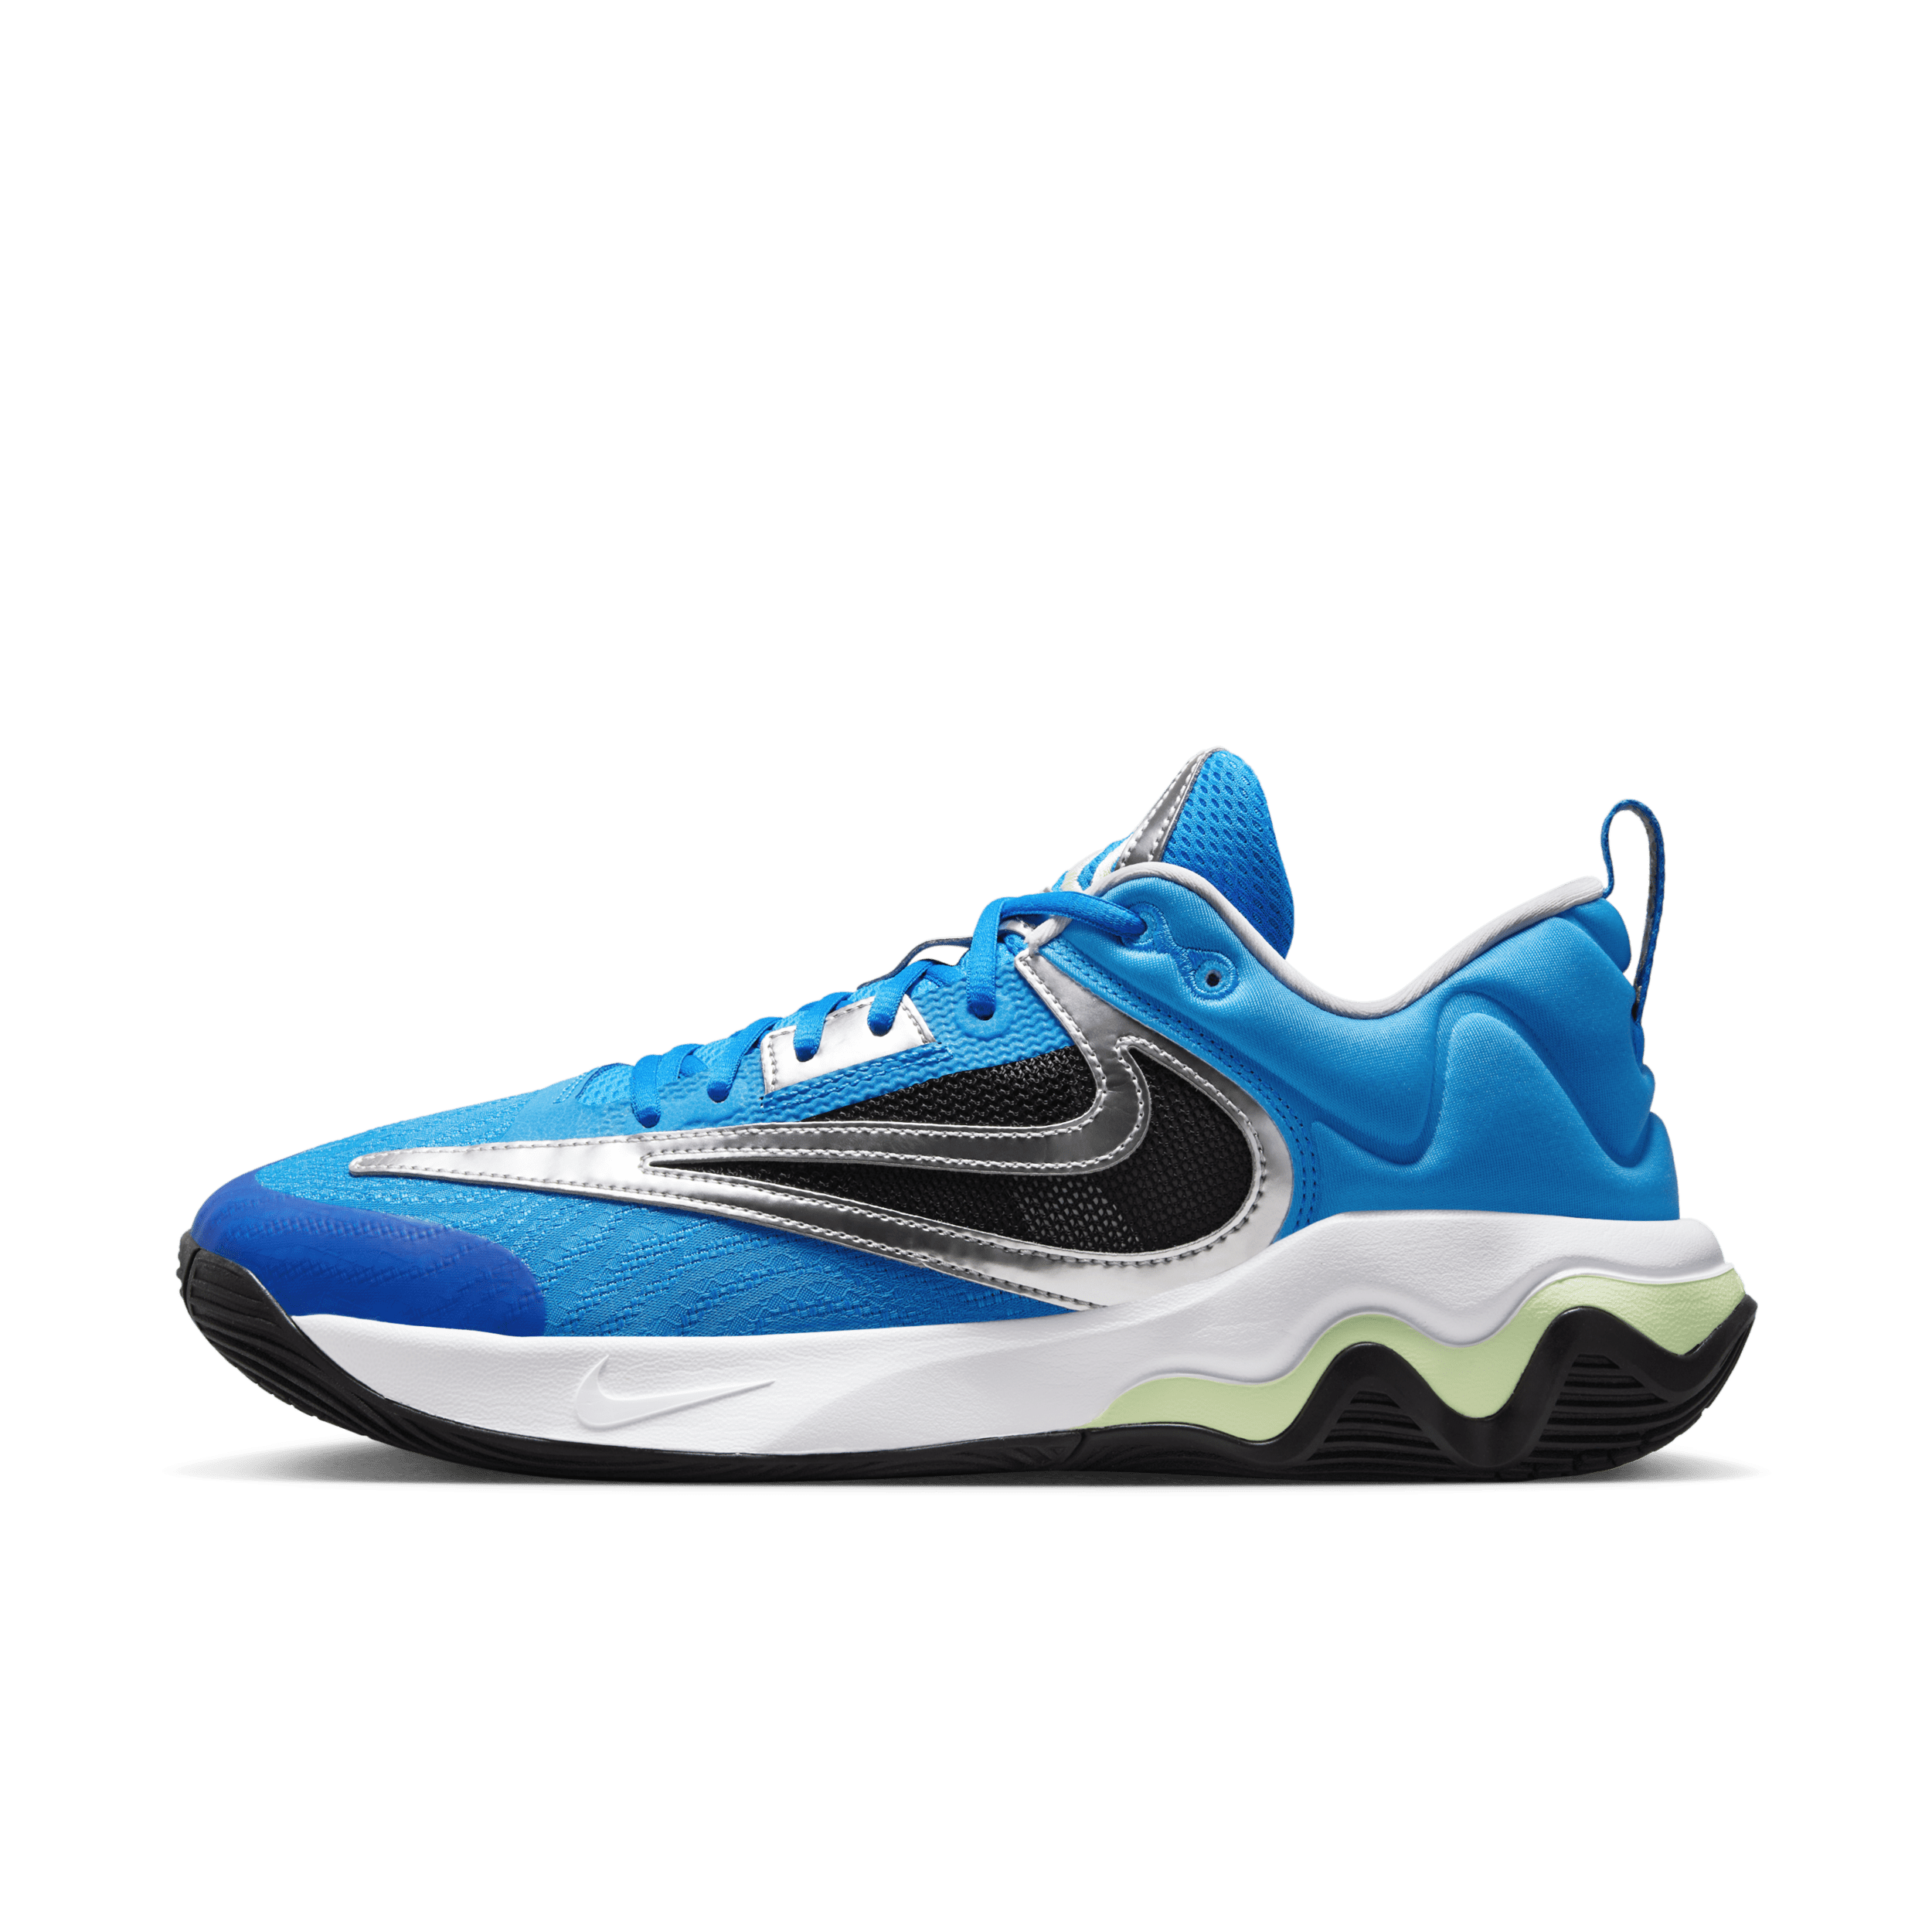 Nike Giannis Immortality 3 basketbalschoenen - Blauw